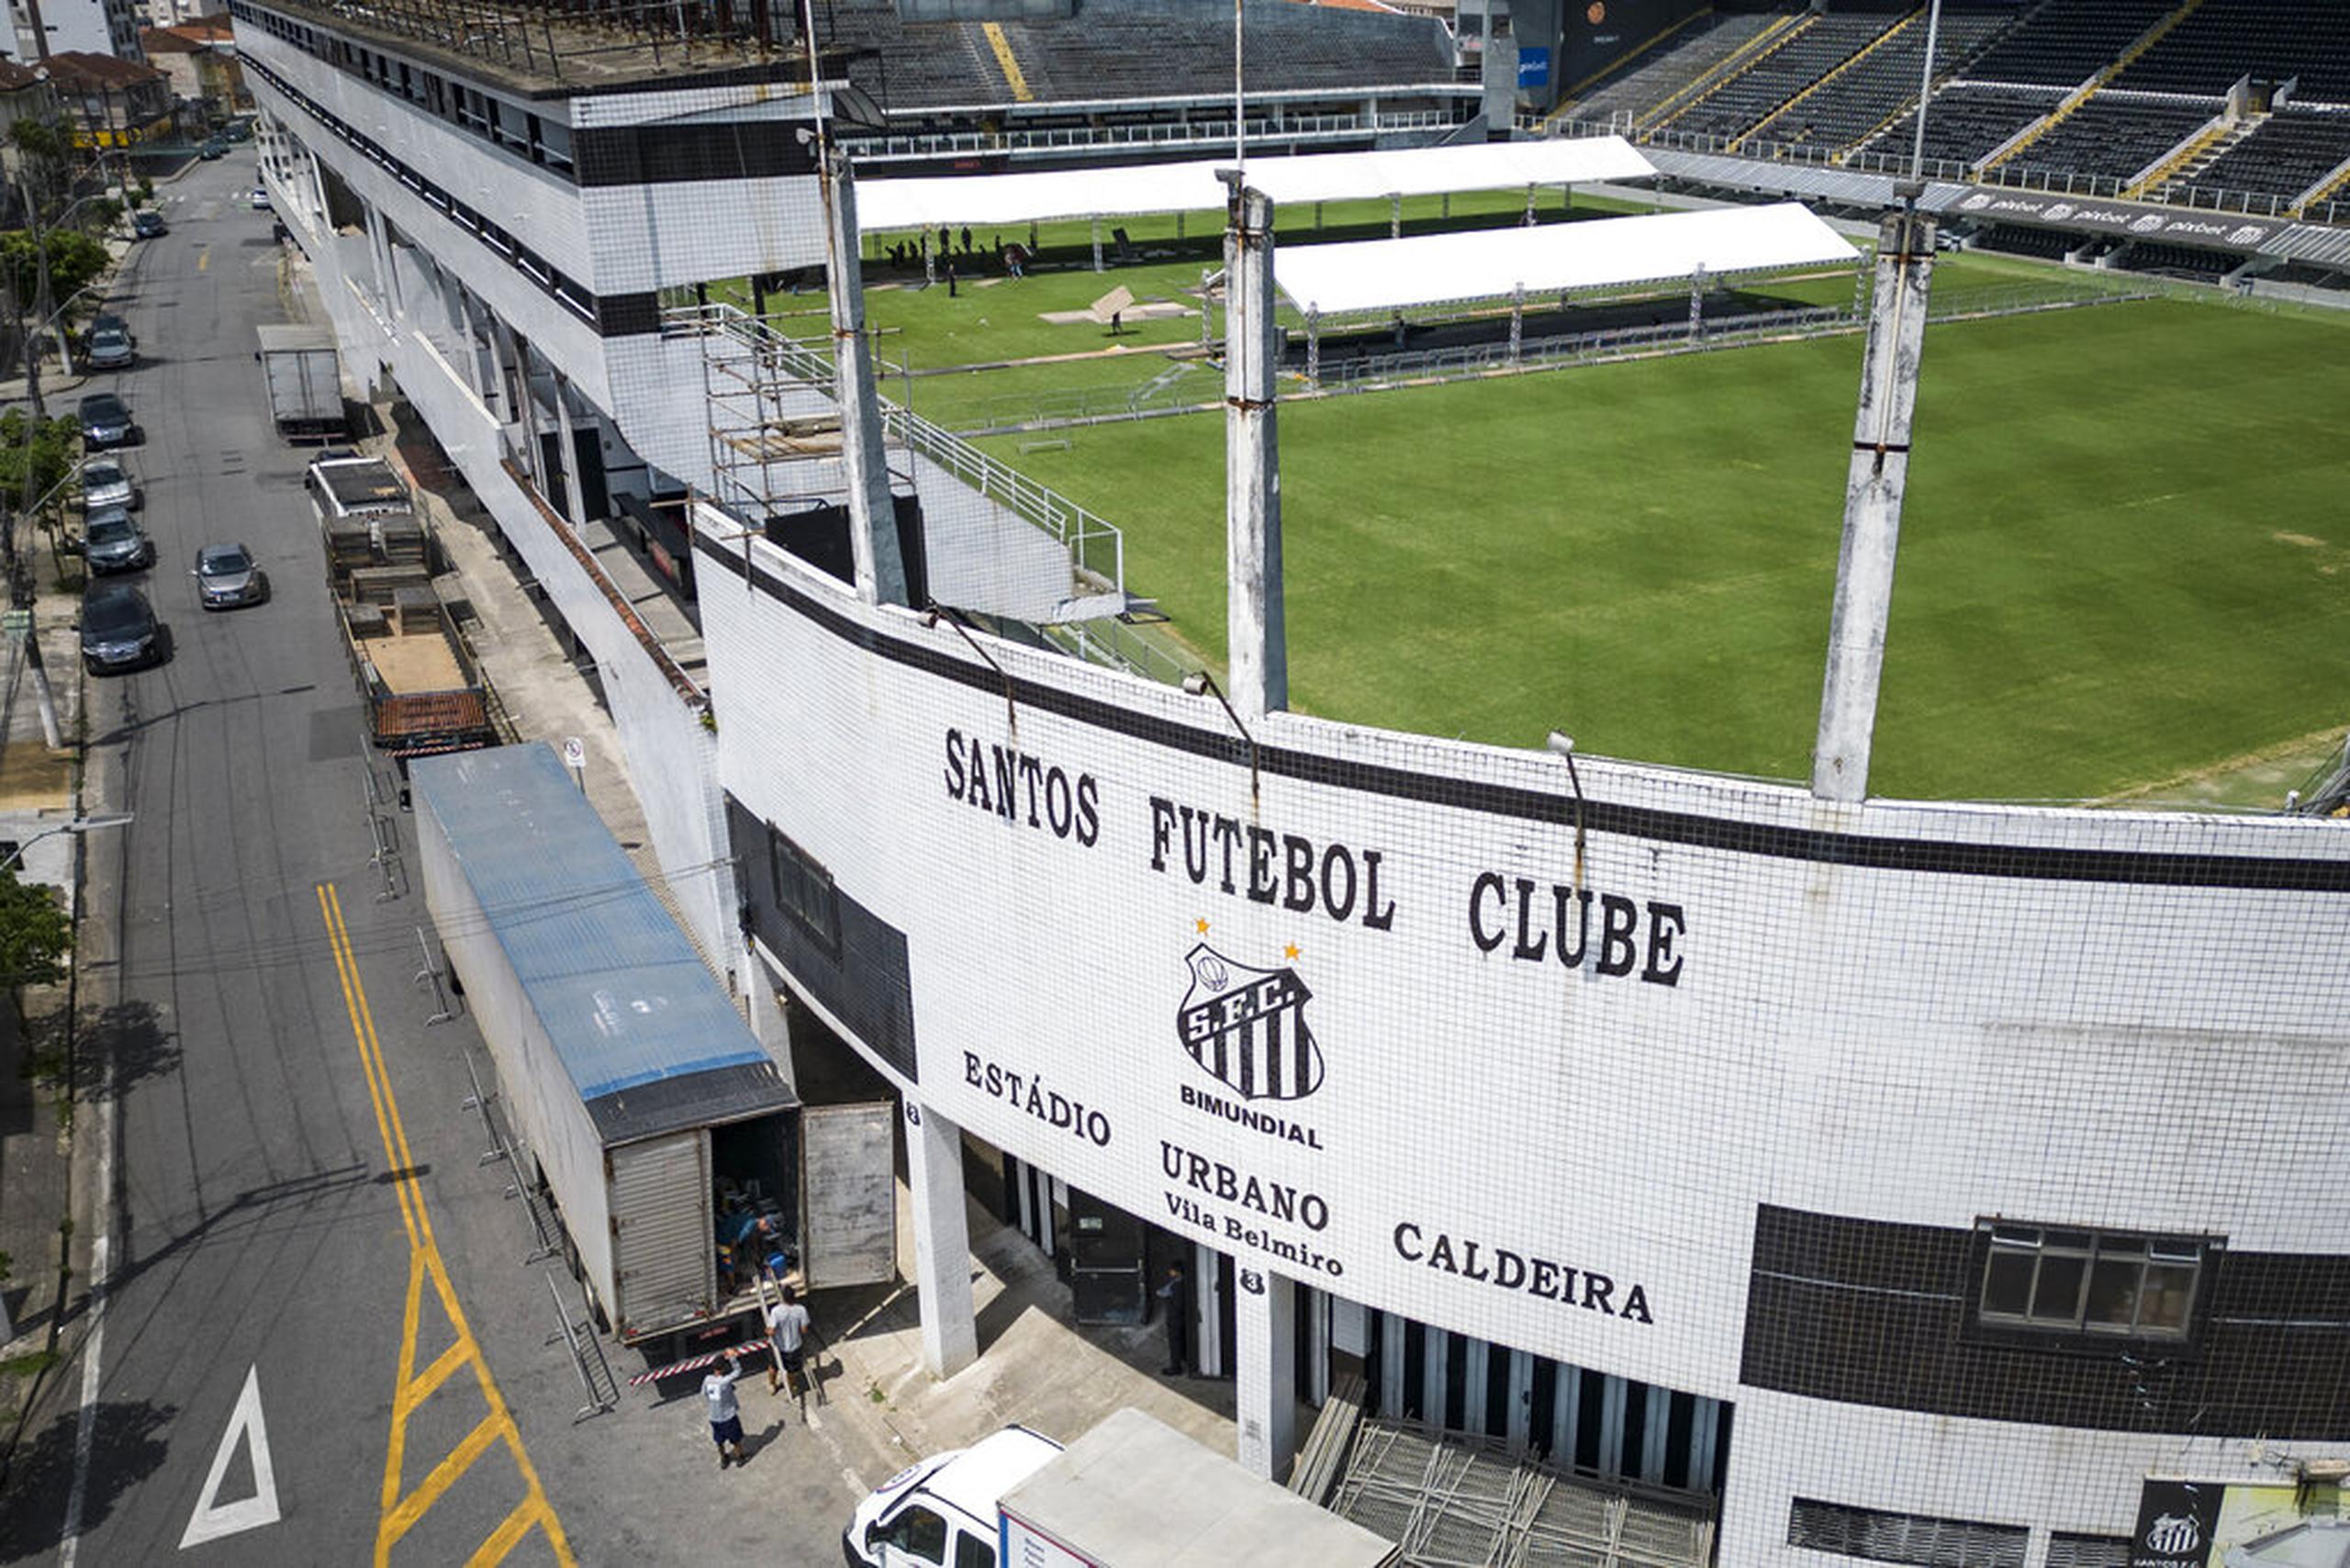 El club Santos confirma que el funeral se llevará a cabo en el estadio el lunes y martes.